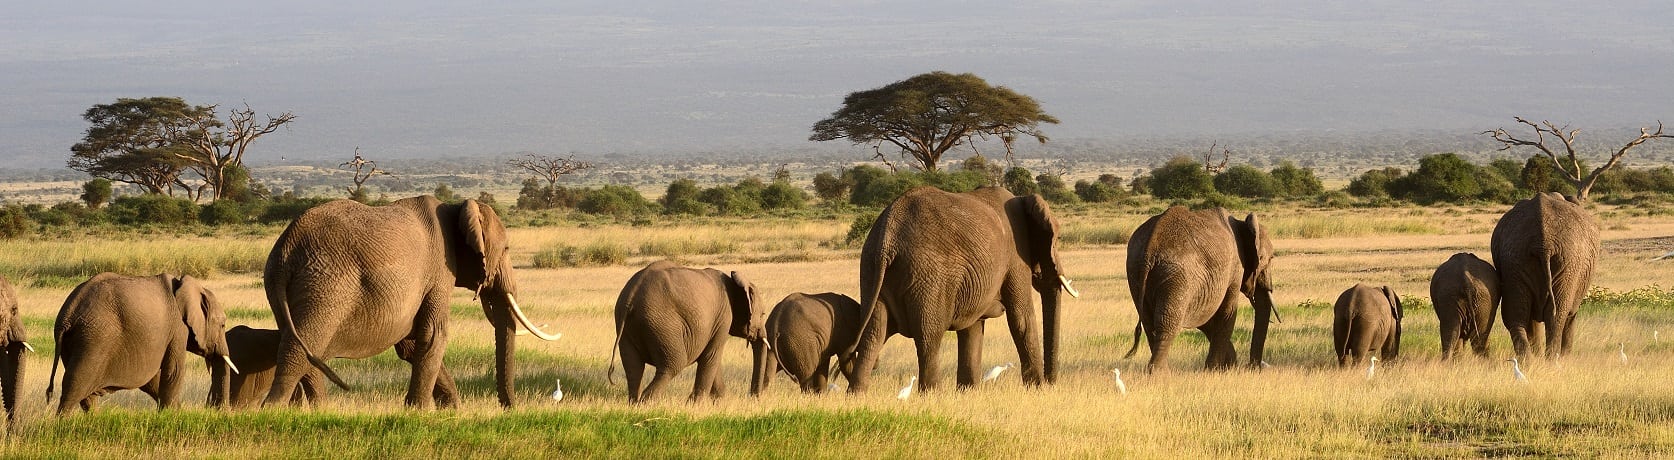 Kenia reizen Amboseli